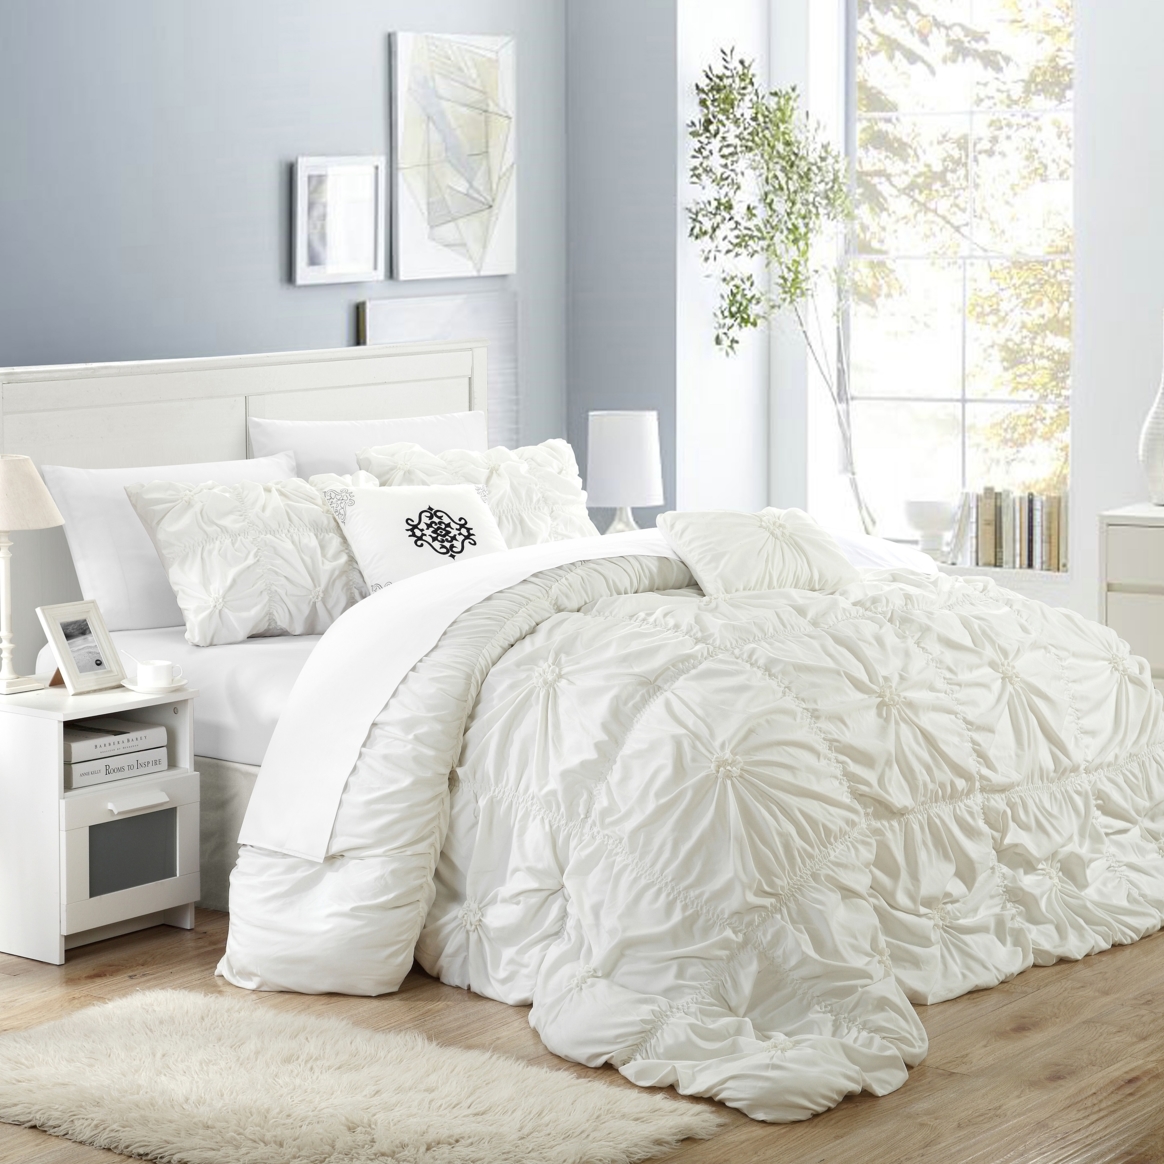 Hilton 10 Piece Comforter Set Floral Pinch Pleated Ruffled Designer Embellished Bed In A Bag Bedding - Lavender, King